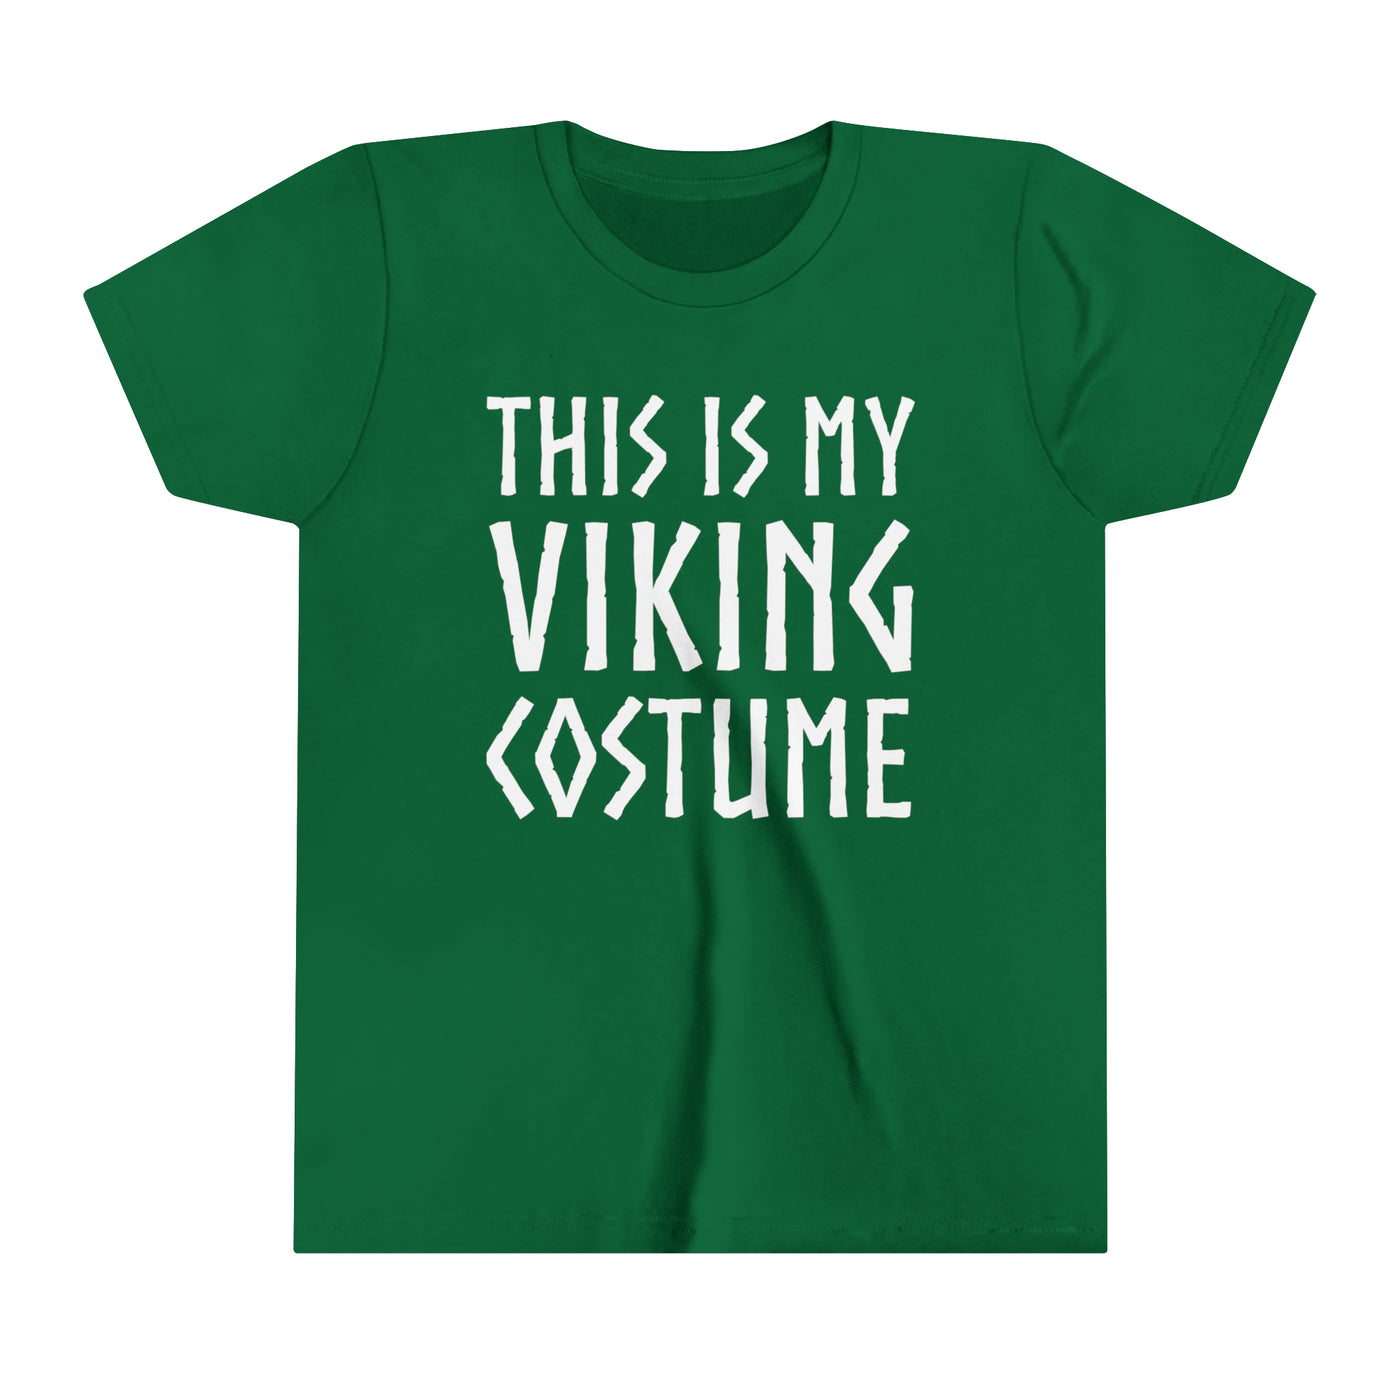 This Is My Viking Costume Kids T-Shirt